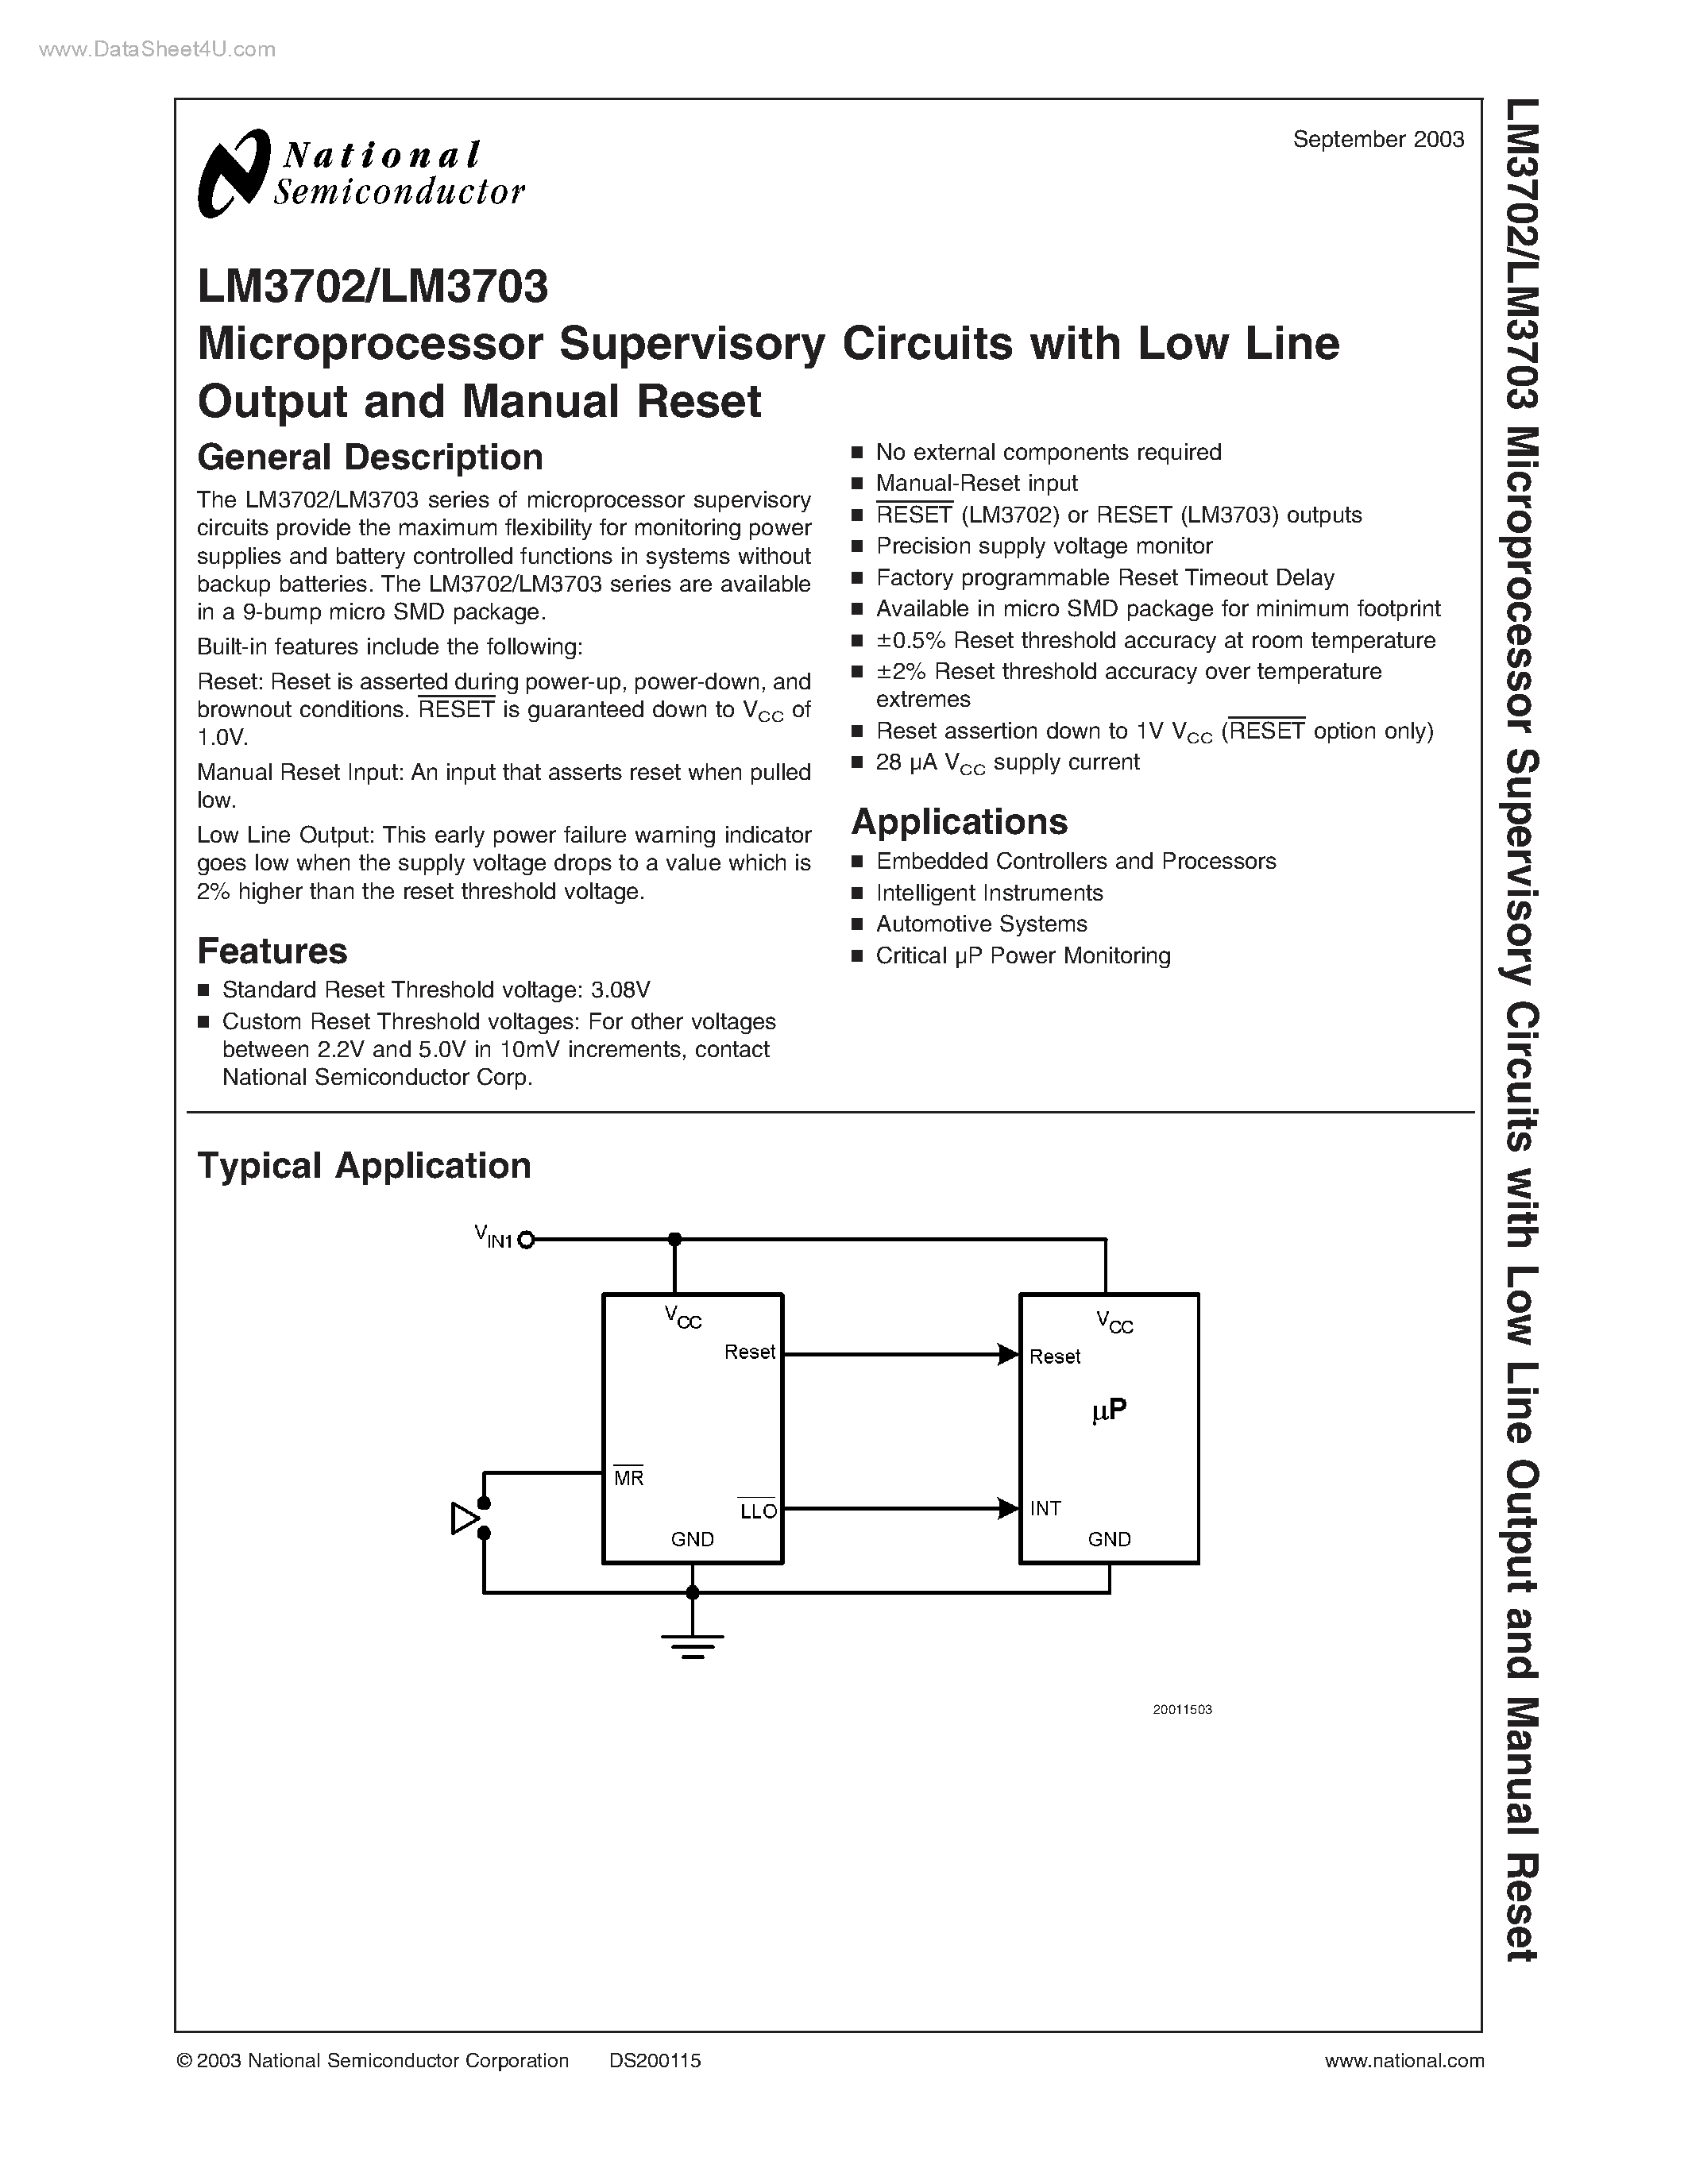 Даташит LM3702 - (LM3702 / LM3703) Microprocessor Supervisory Circuits страница 1